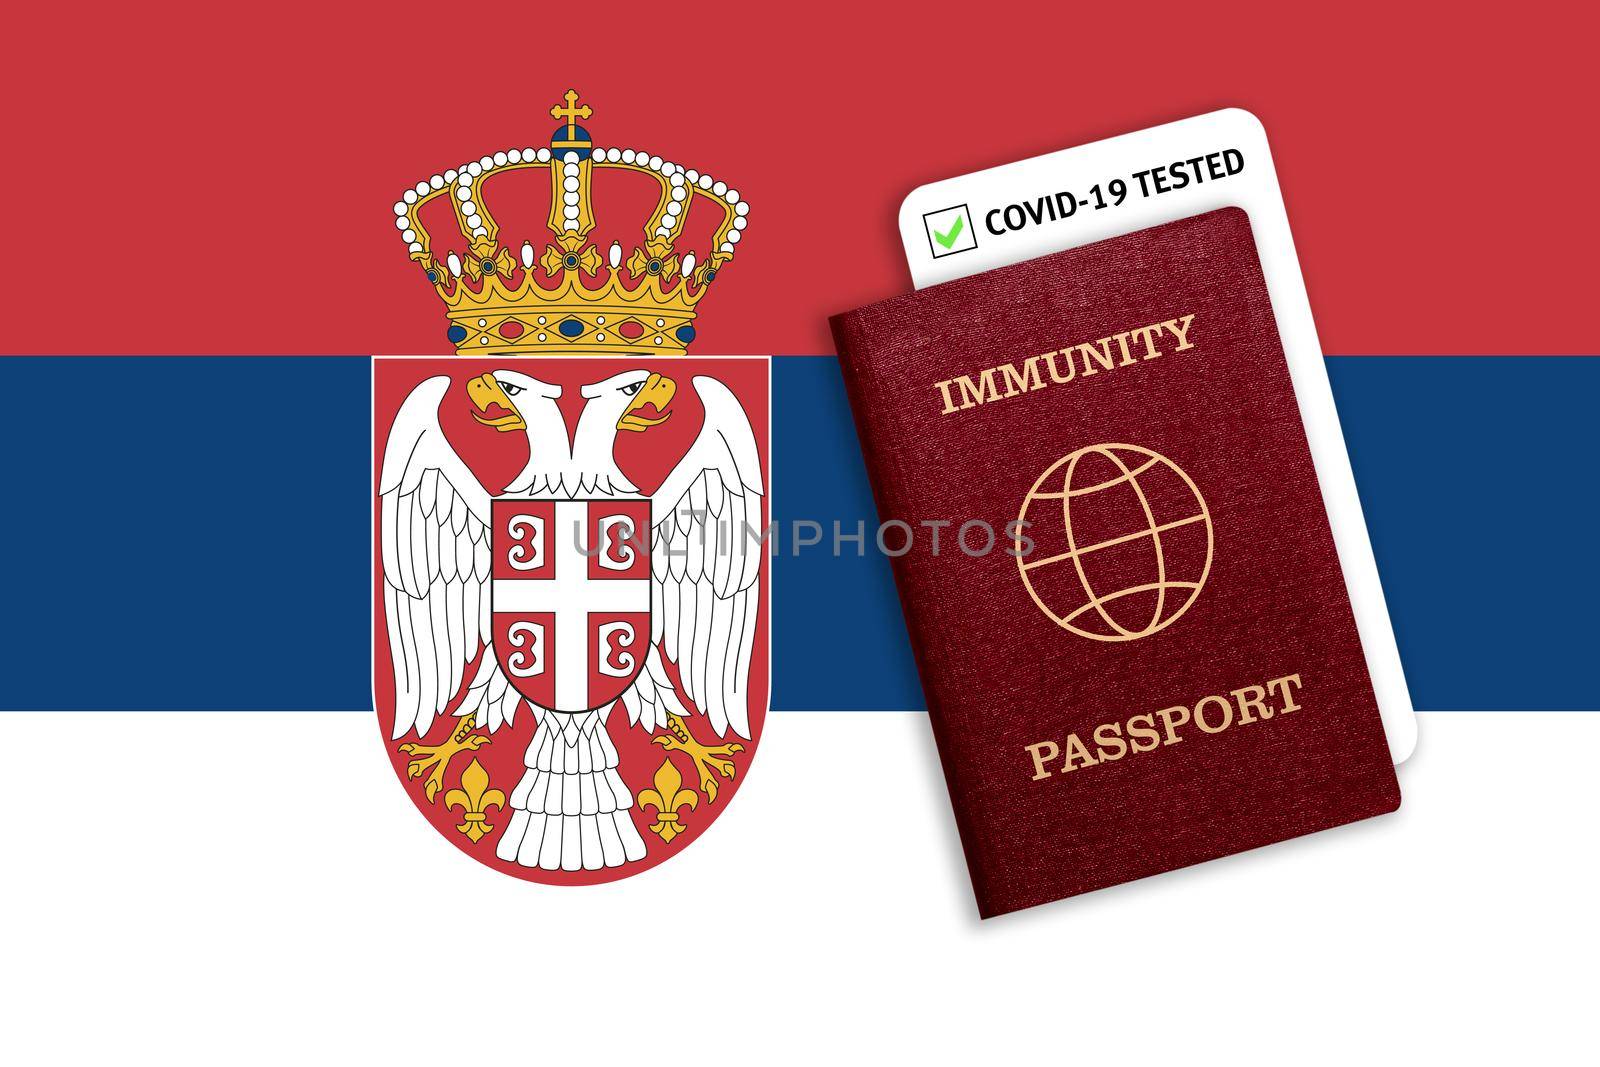 Immunity passport and coronavirus test with flag of Serbia by galinasharapova